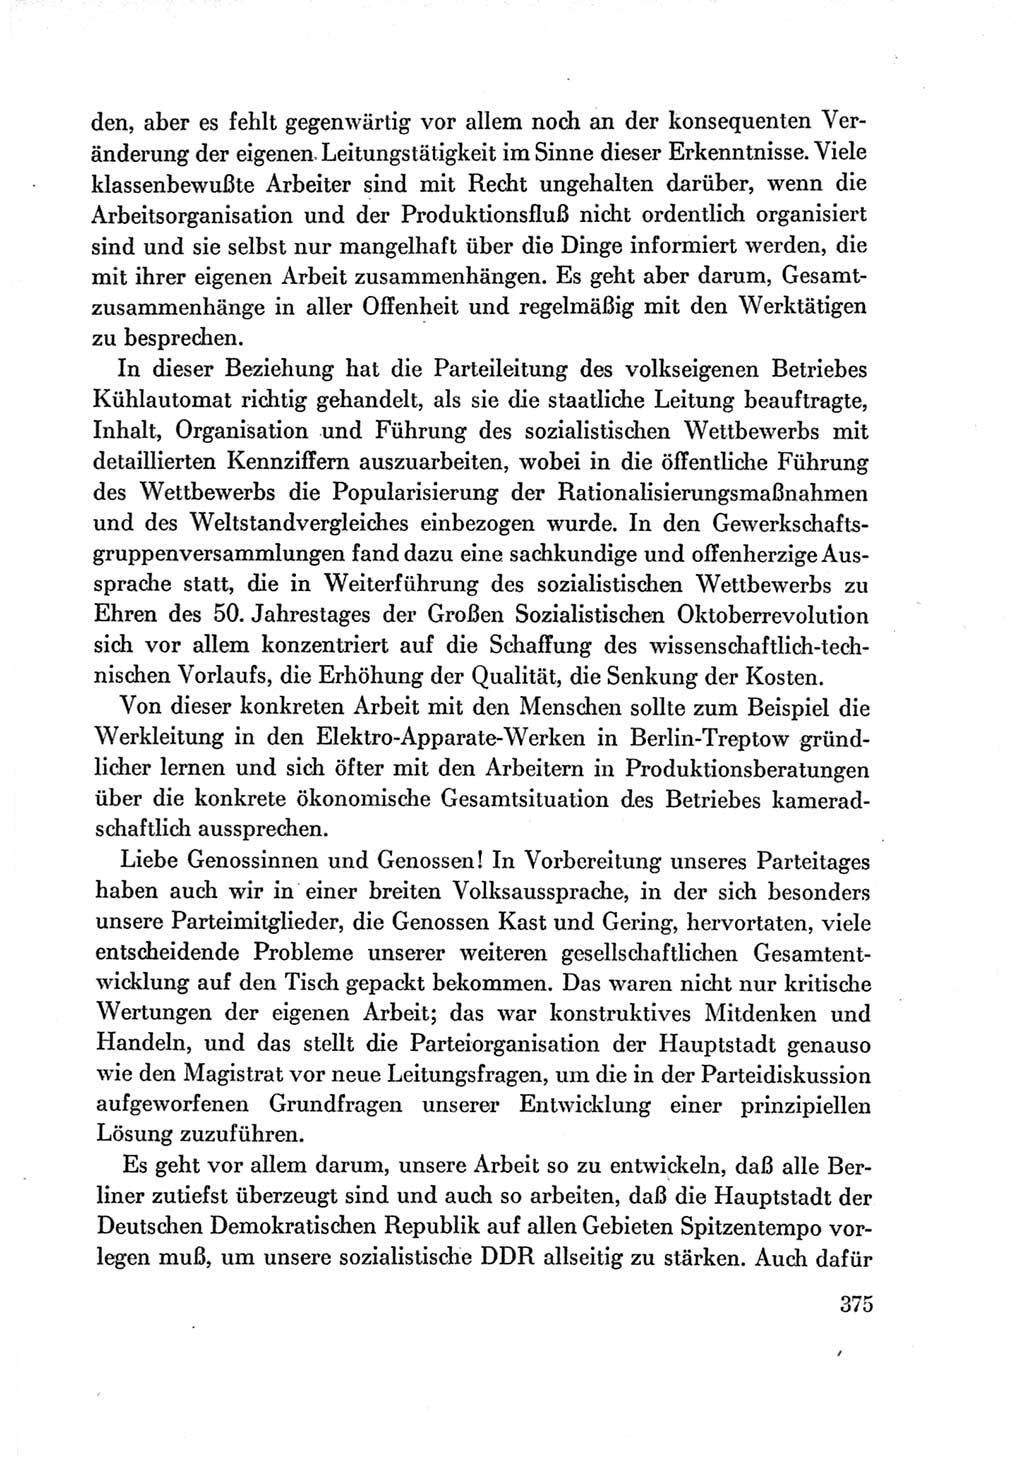 Protokoll der Verhandlungen des Ⅶ. Parteitages der Sozialistischen Einheitspartei Deutschlands (SED) [Deutsche Demokratische Republik (DDR)] 1967, Band Ⅰ, Seite 375 (Prot. Verh. Ⅶ. PT SED DDR 1967, Bd. Ⅰ, S. 375)